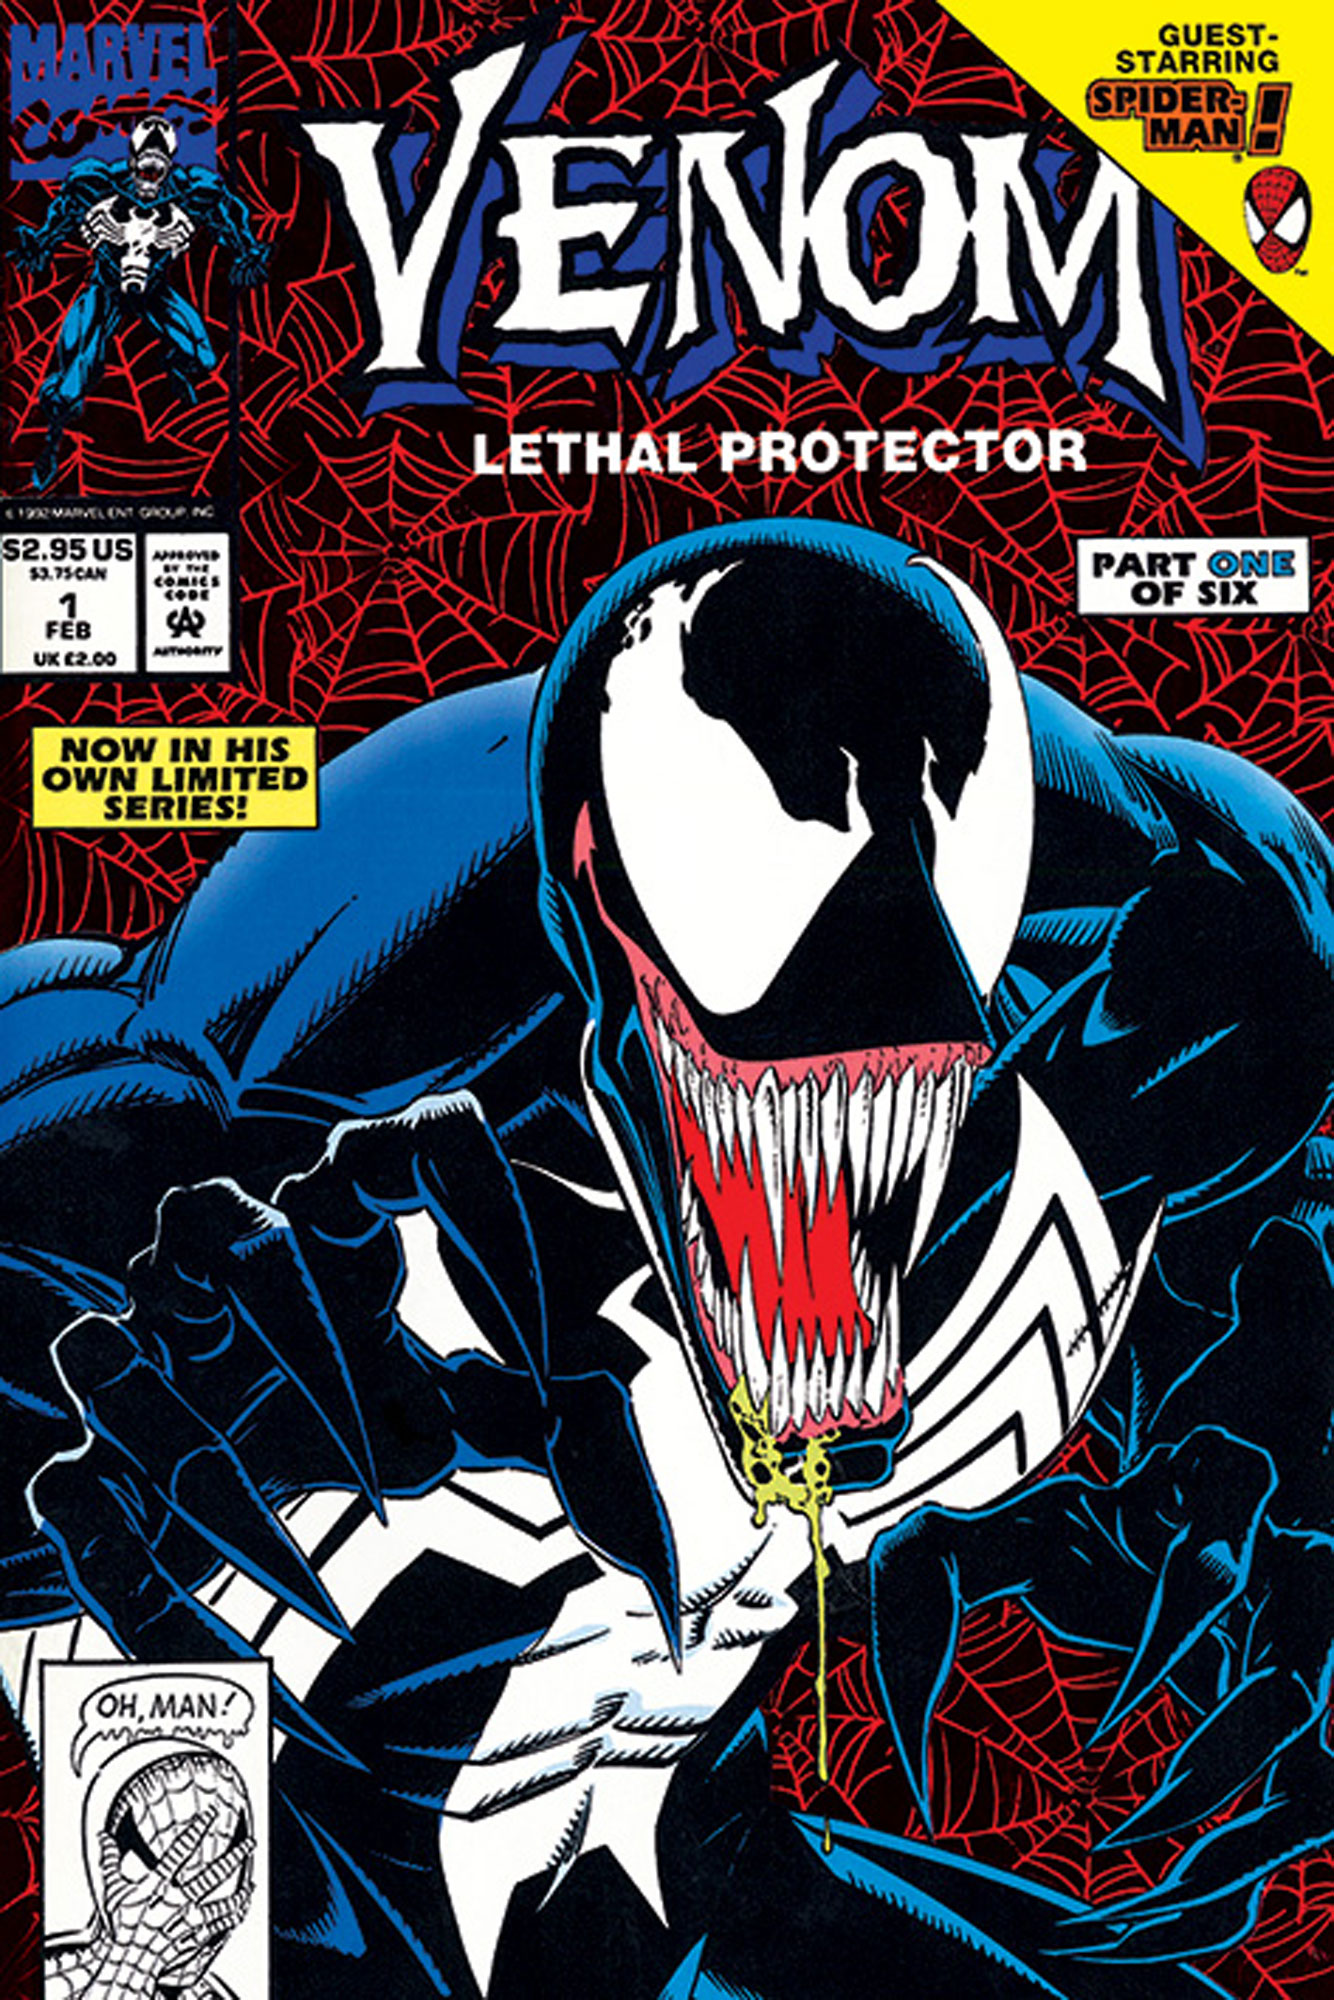 Marvel - Venom - Lethal Protector Part 1